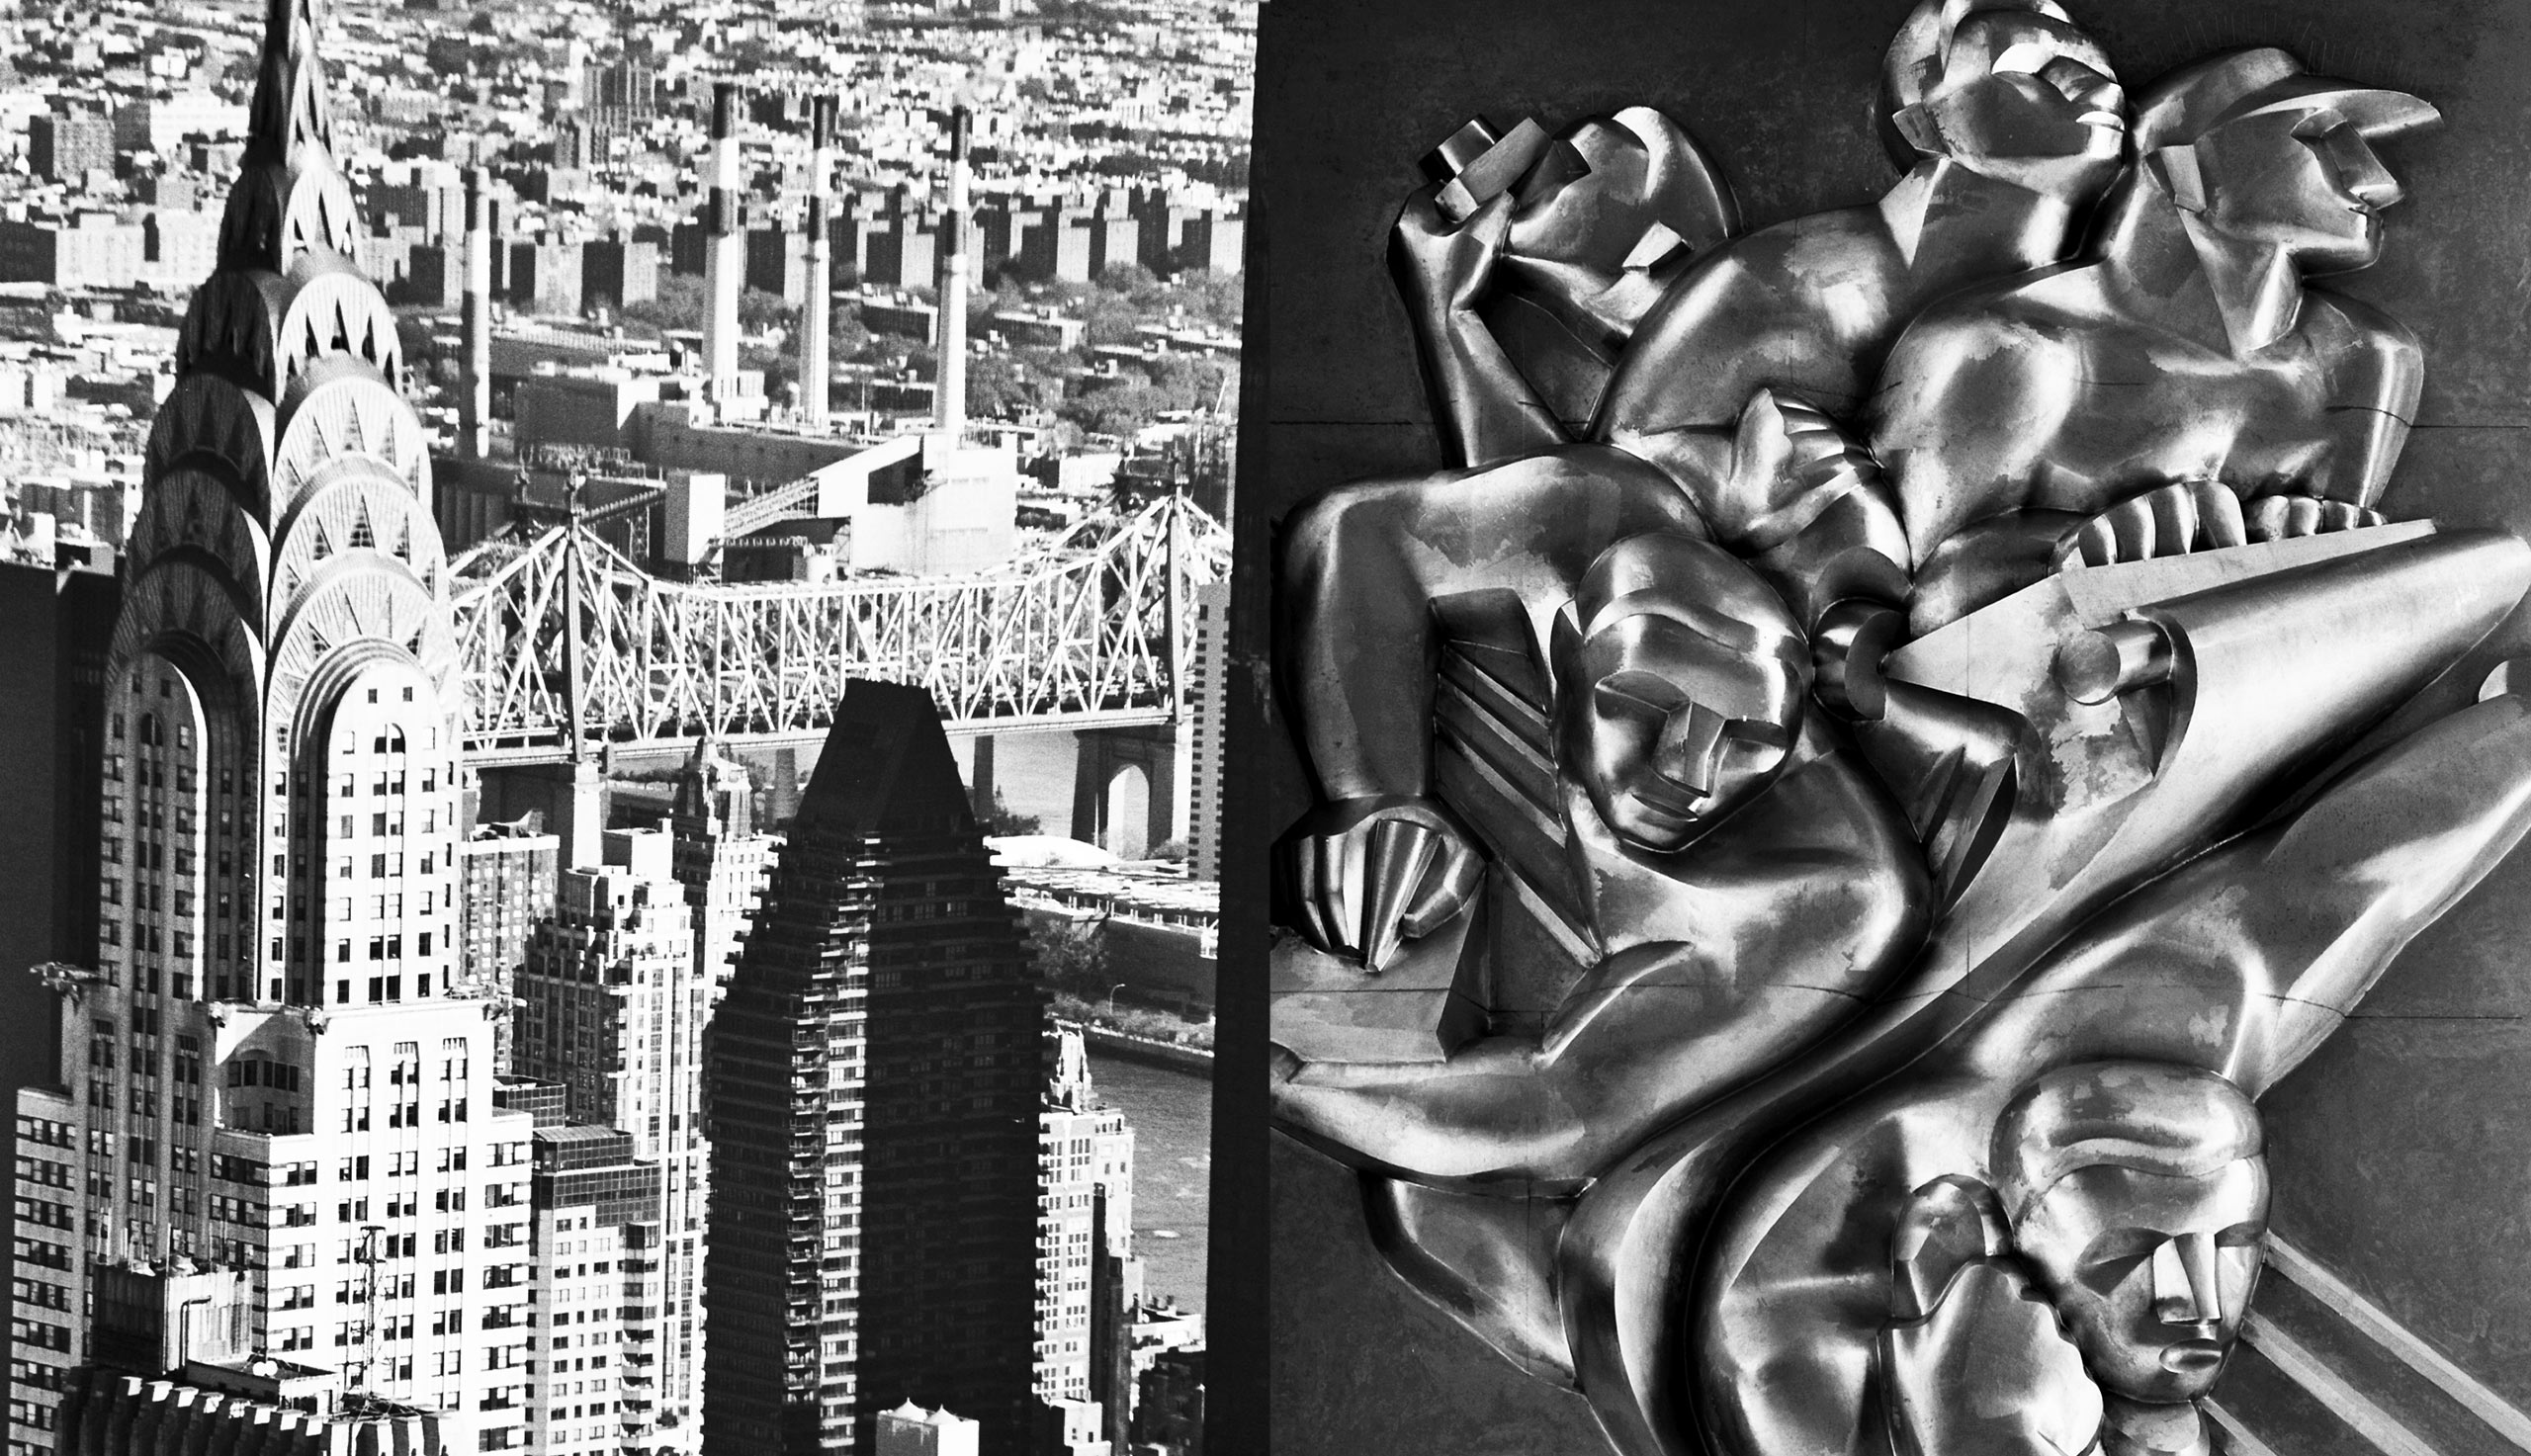 Left: The Chrysler Building. Right: Art Deco reliefs at Rockefeller Center